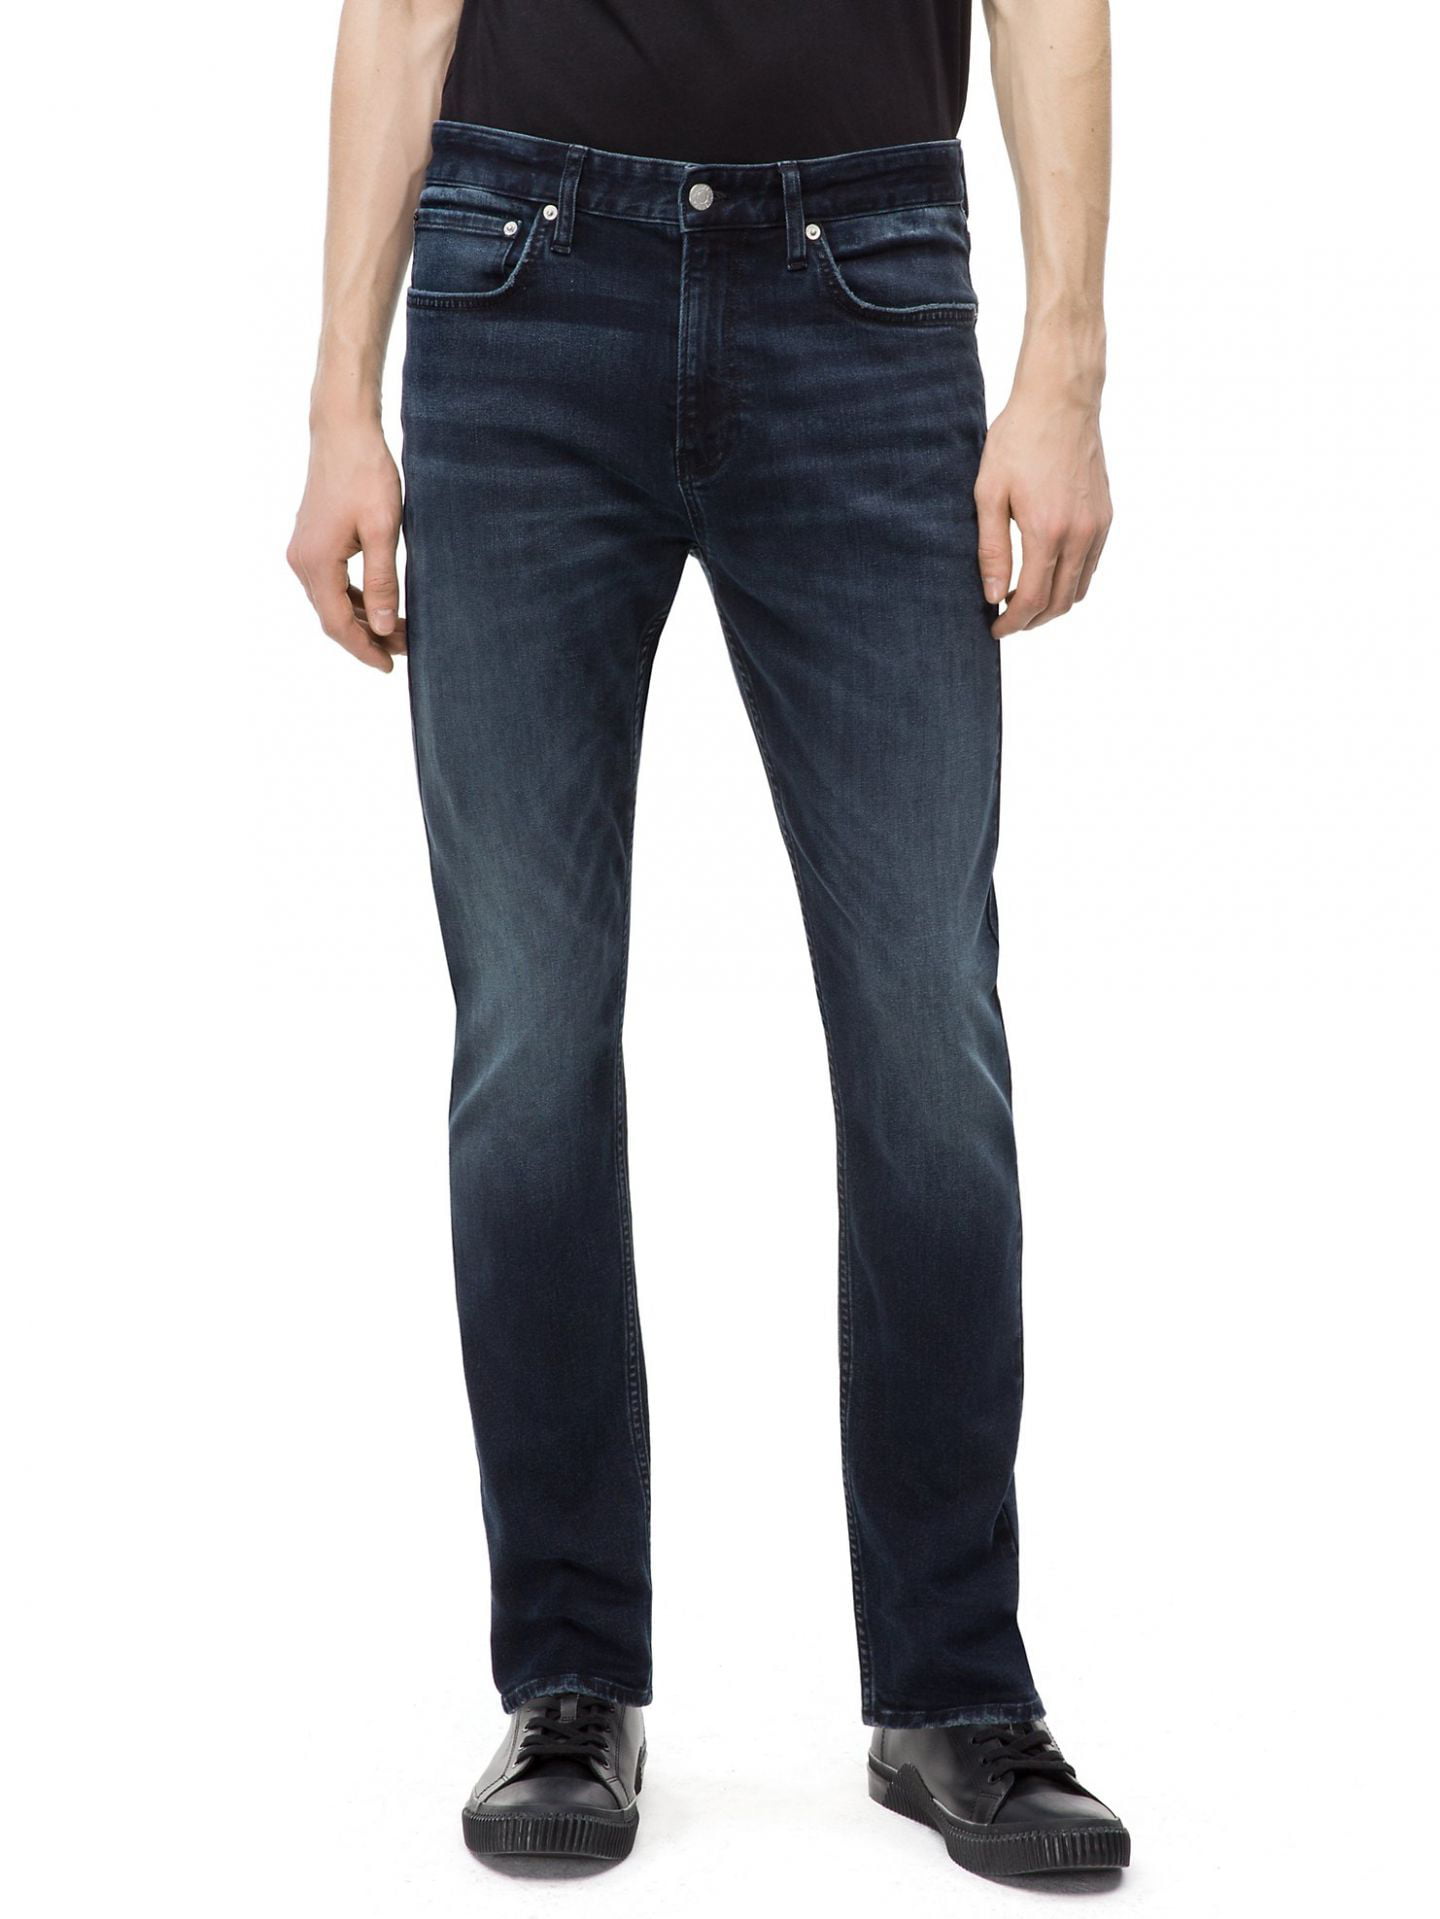 Calvin Klein Men's Boston Blue Jeans, Boston Blue/Black, 32X34 -